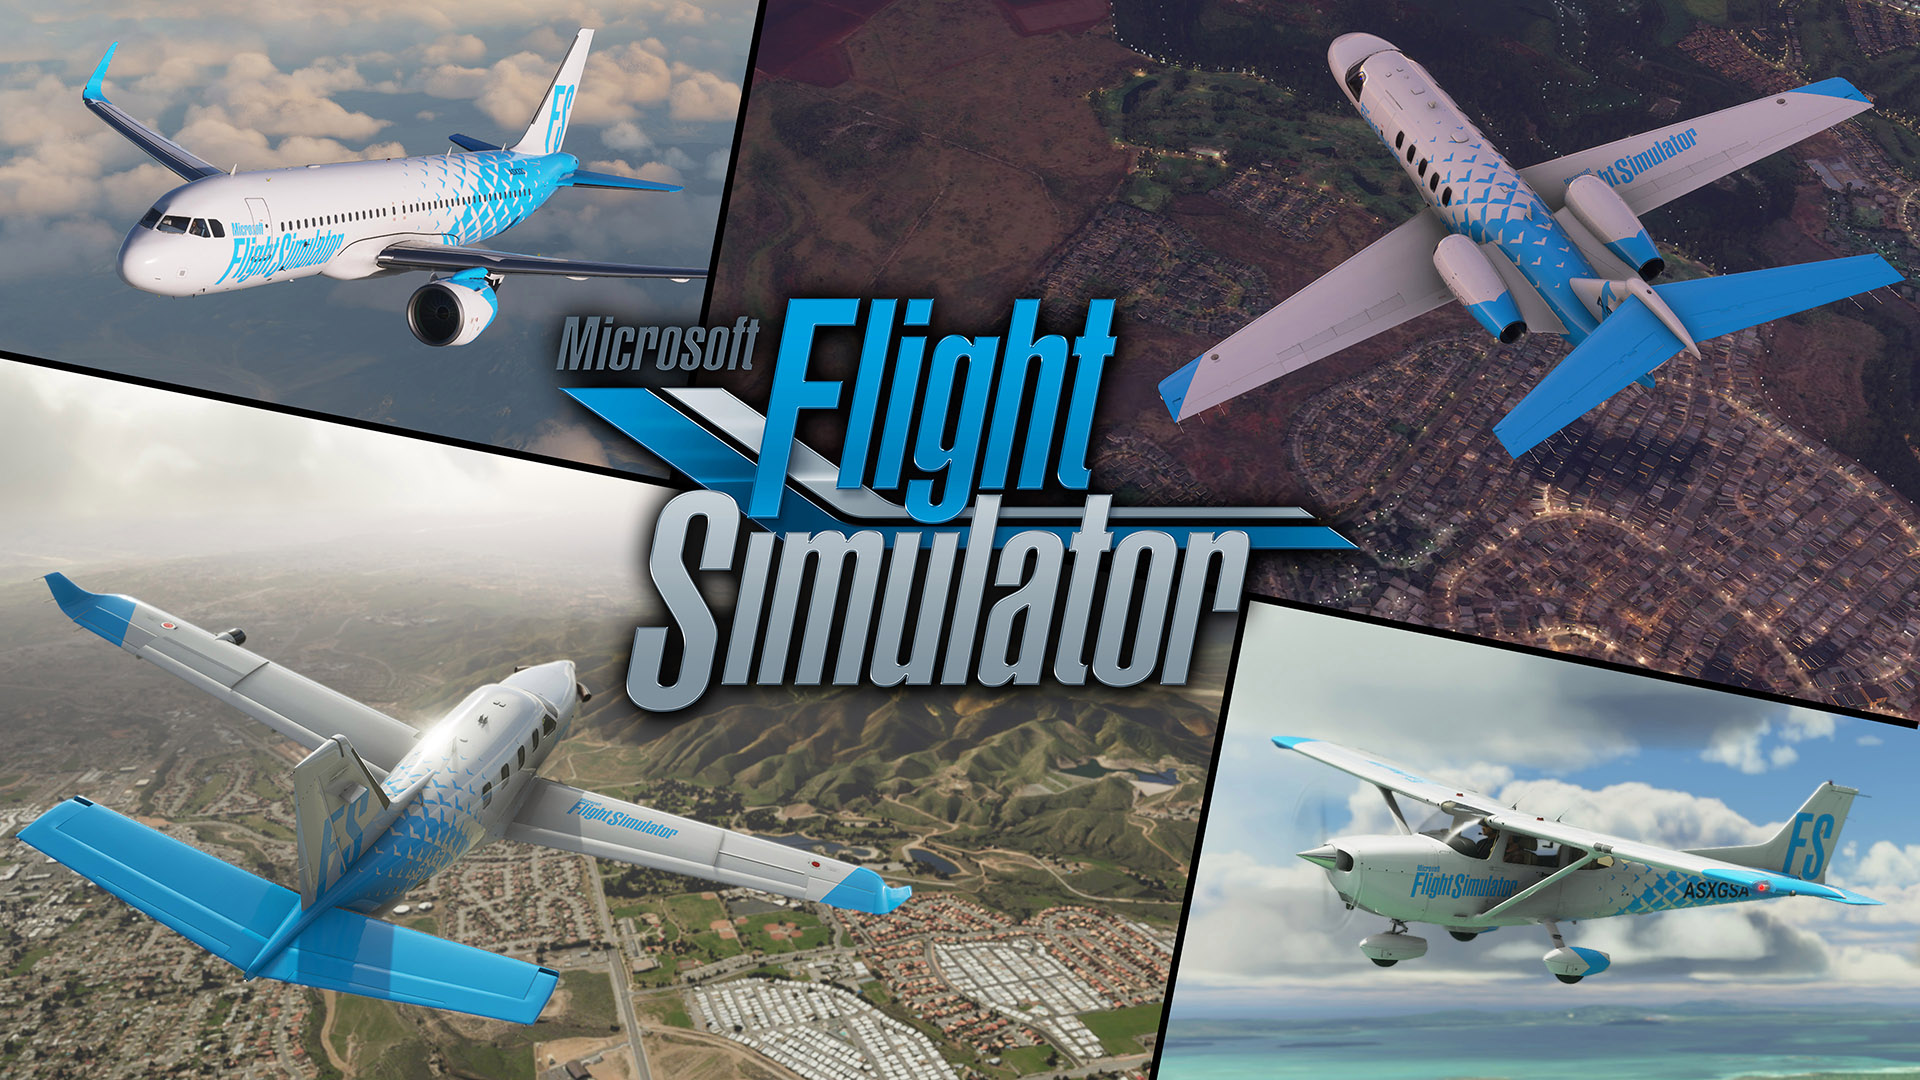 Flight Simulator - Tựa game nặng nhất thế giới chính thức có chế độ VR, đưa người chơi vào máy bay với góc nhìn siêu thực